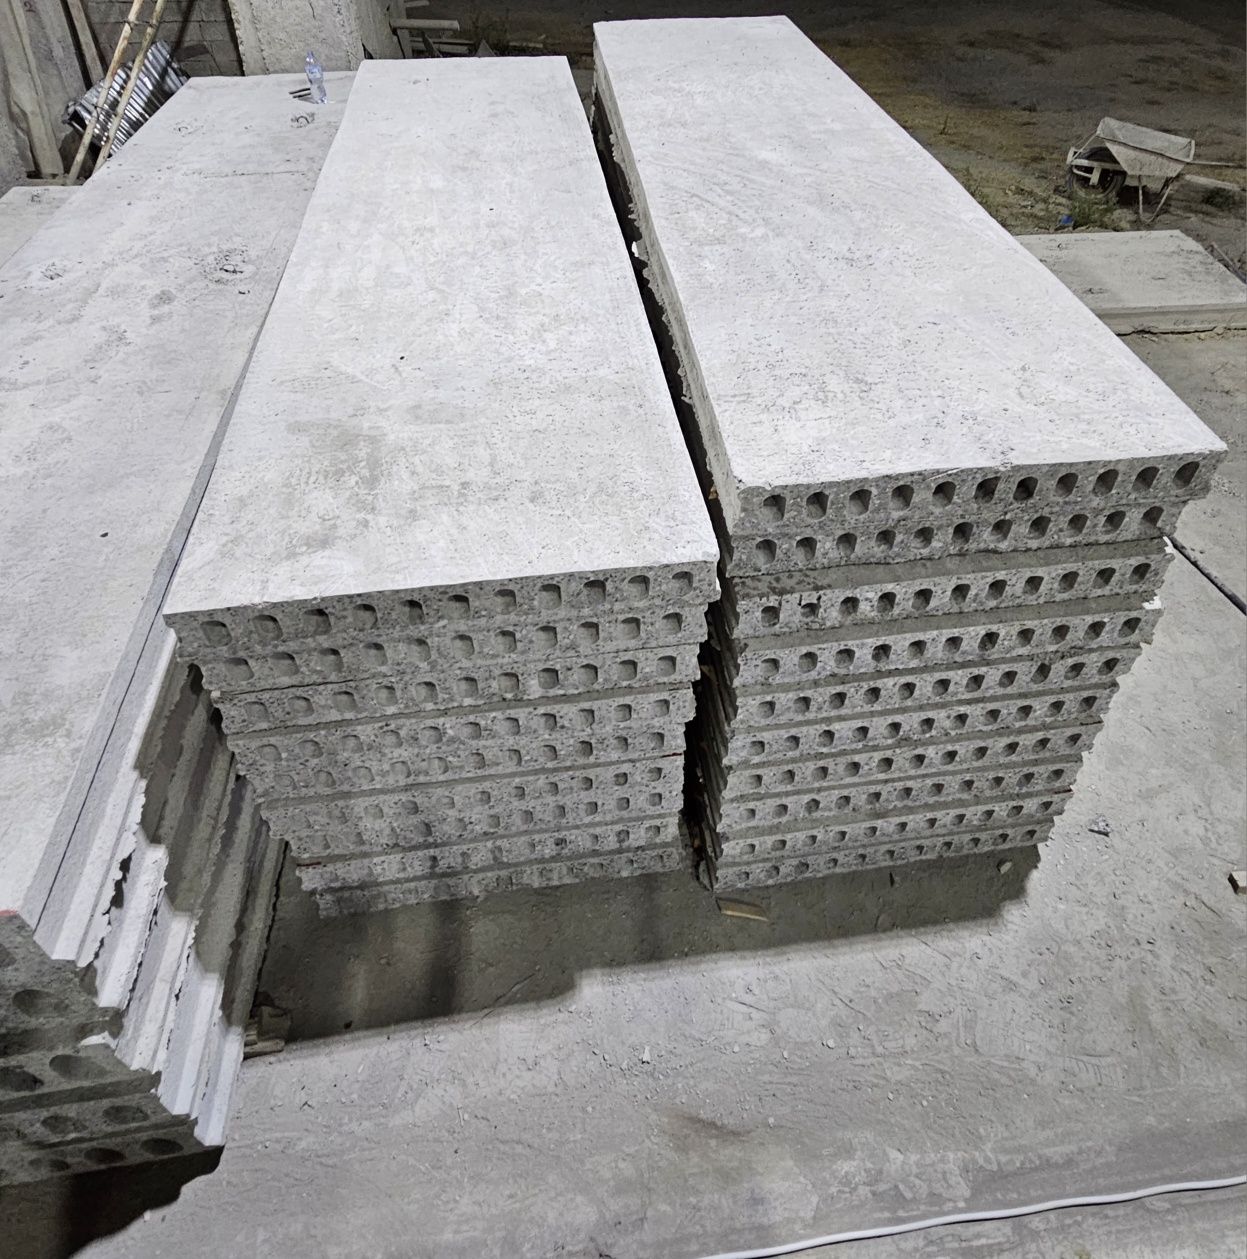 Be pul dastafka,plita,Плиты перекрития, плита, бетон плита,  beton